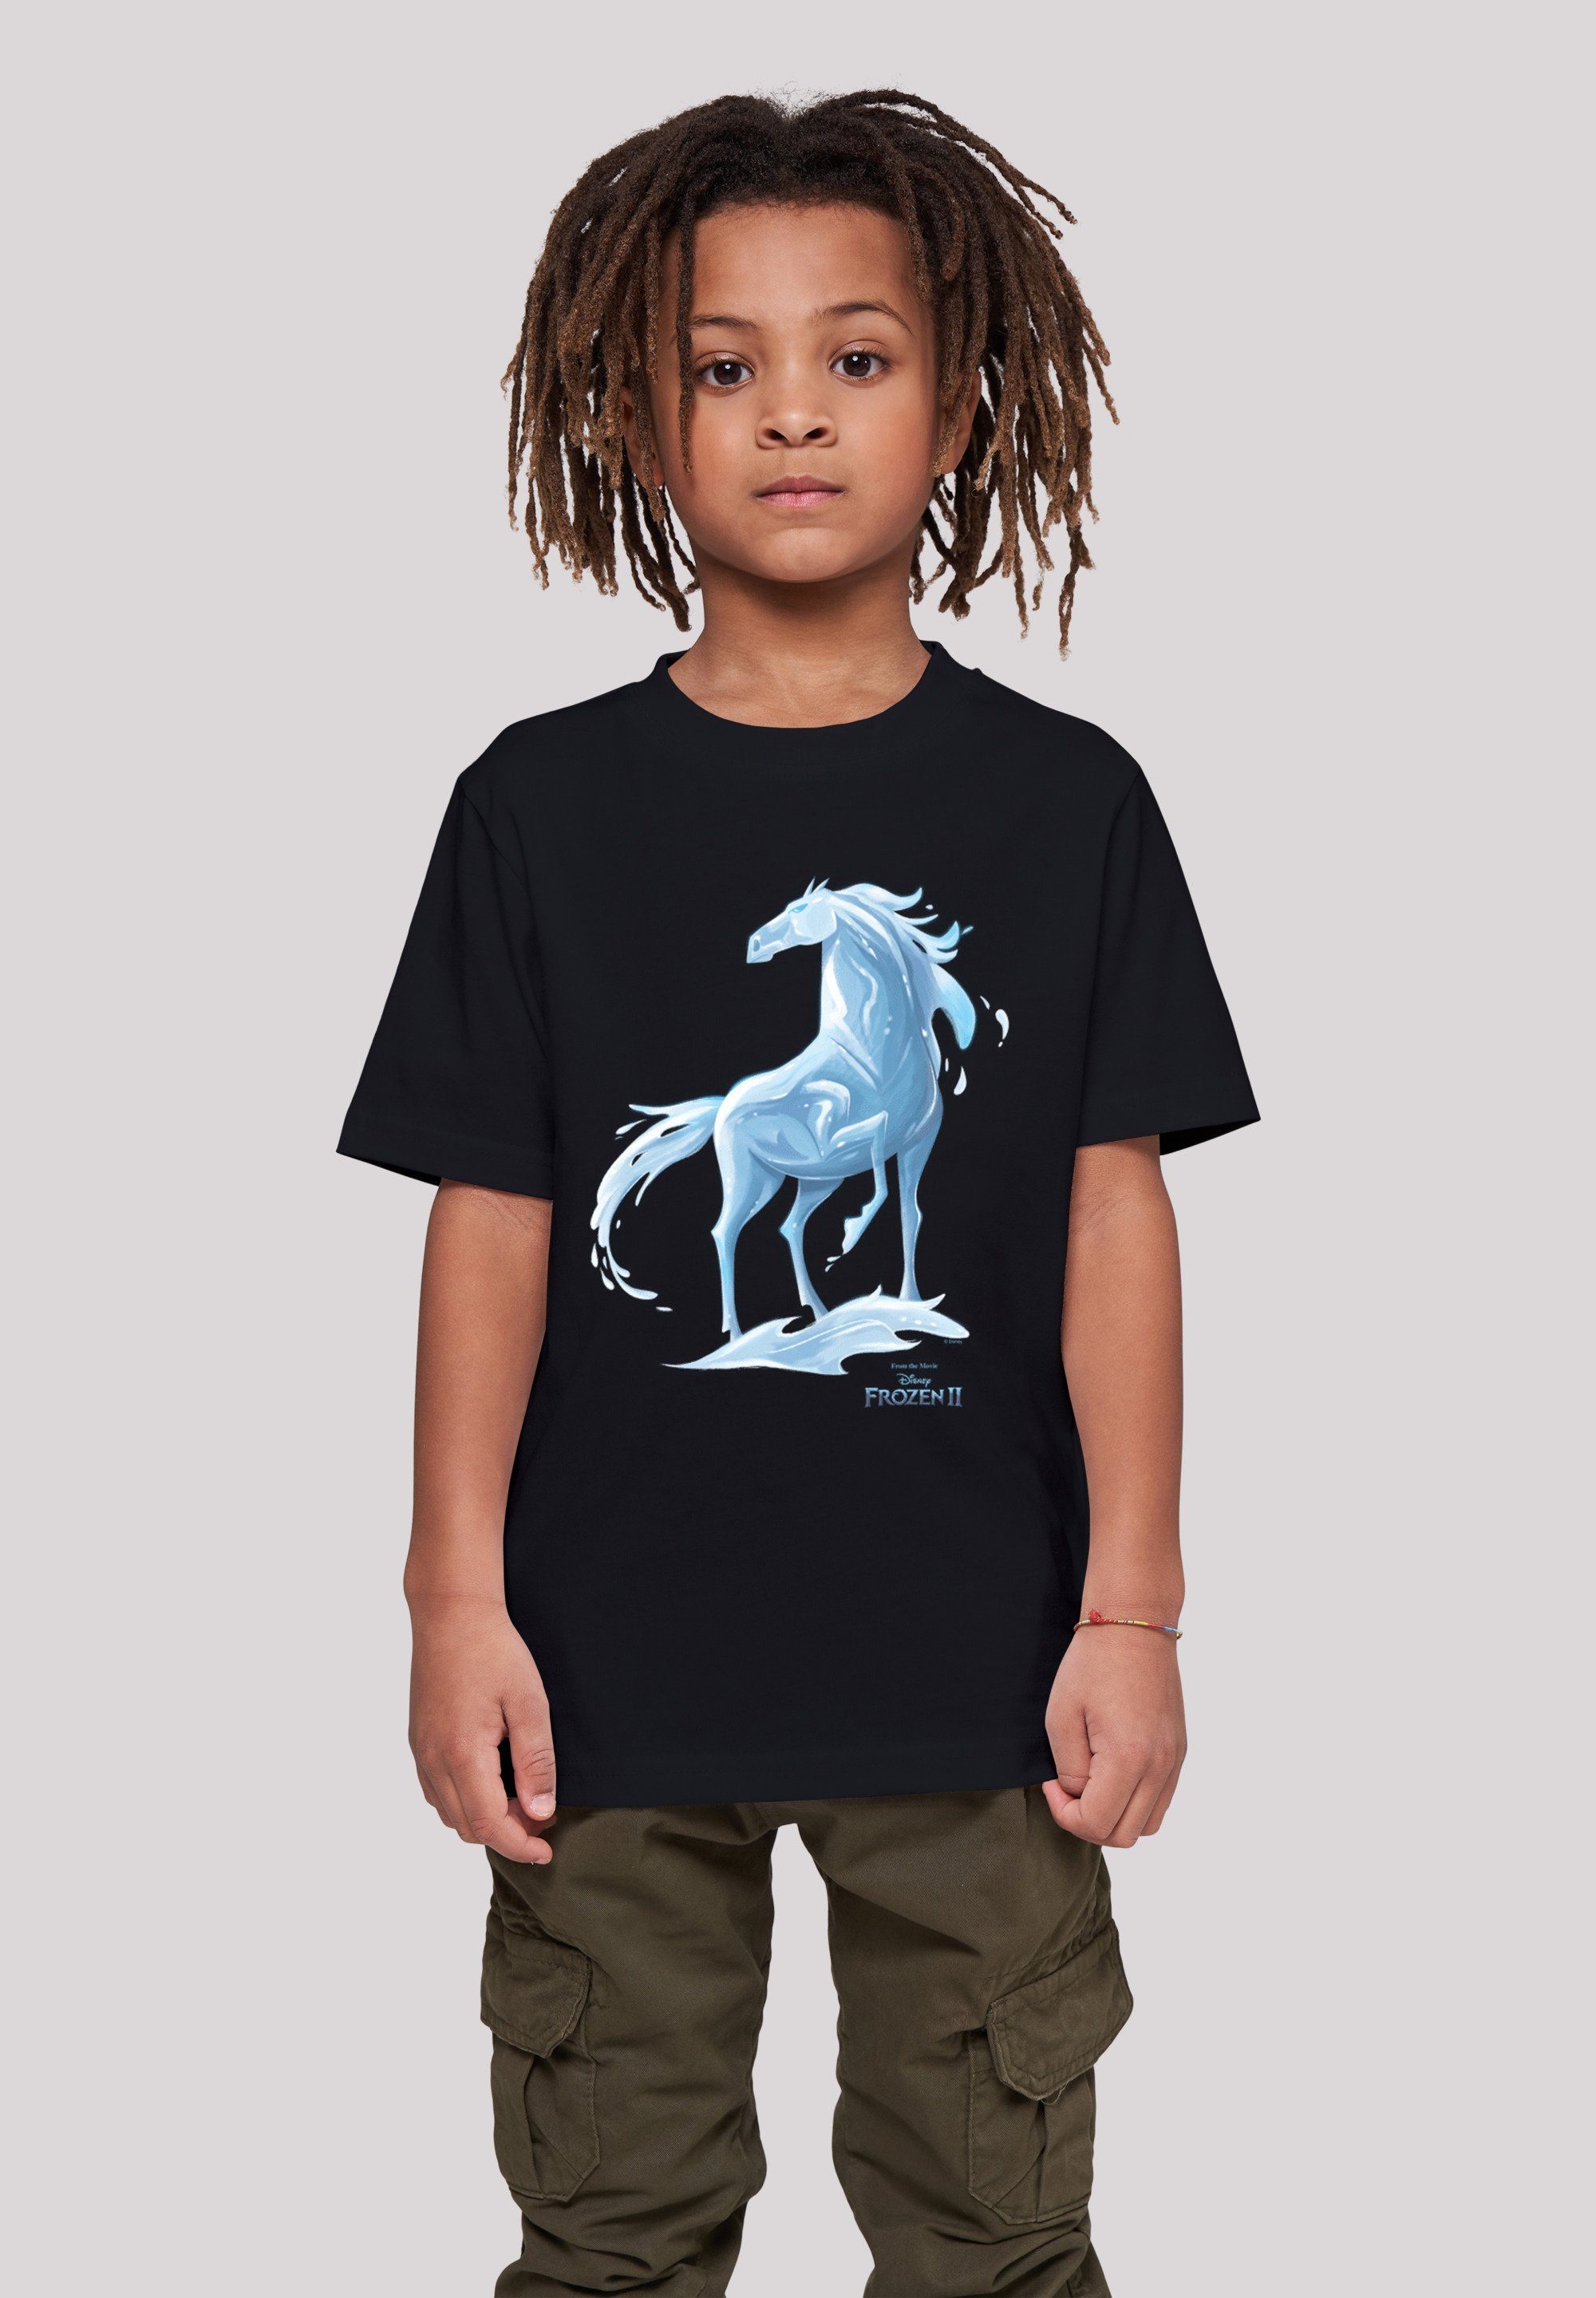 Pferd Nokk Frozen Wassergeist 2 Kinder,Premium Unisex F4NT4STIC Merch,Jungen,Mädchen,Bedruckt Disney T-Shirt